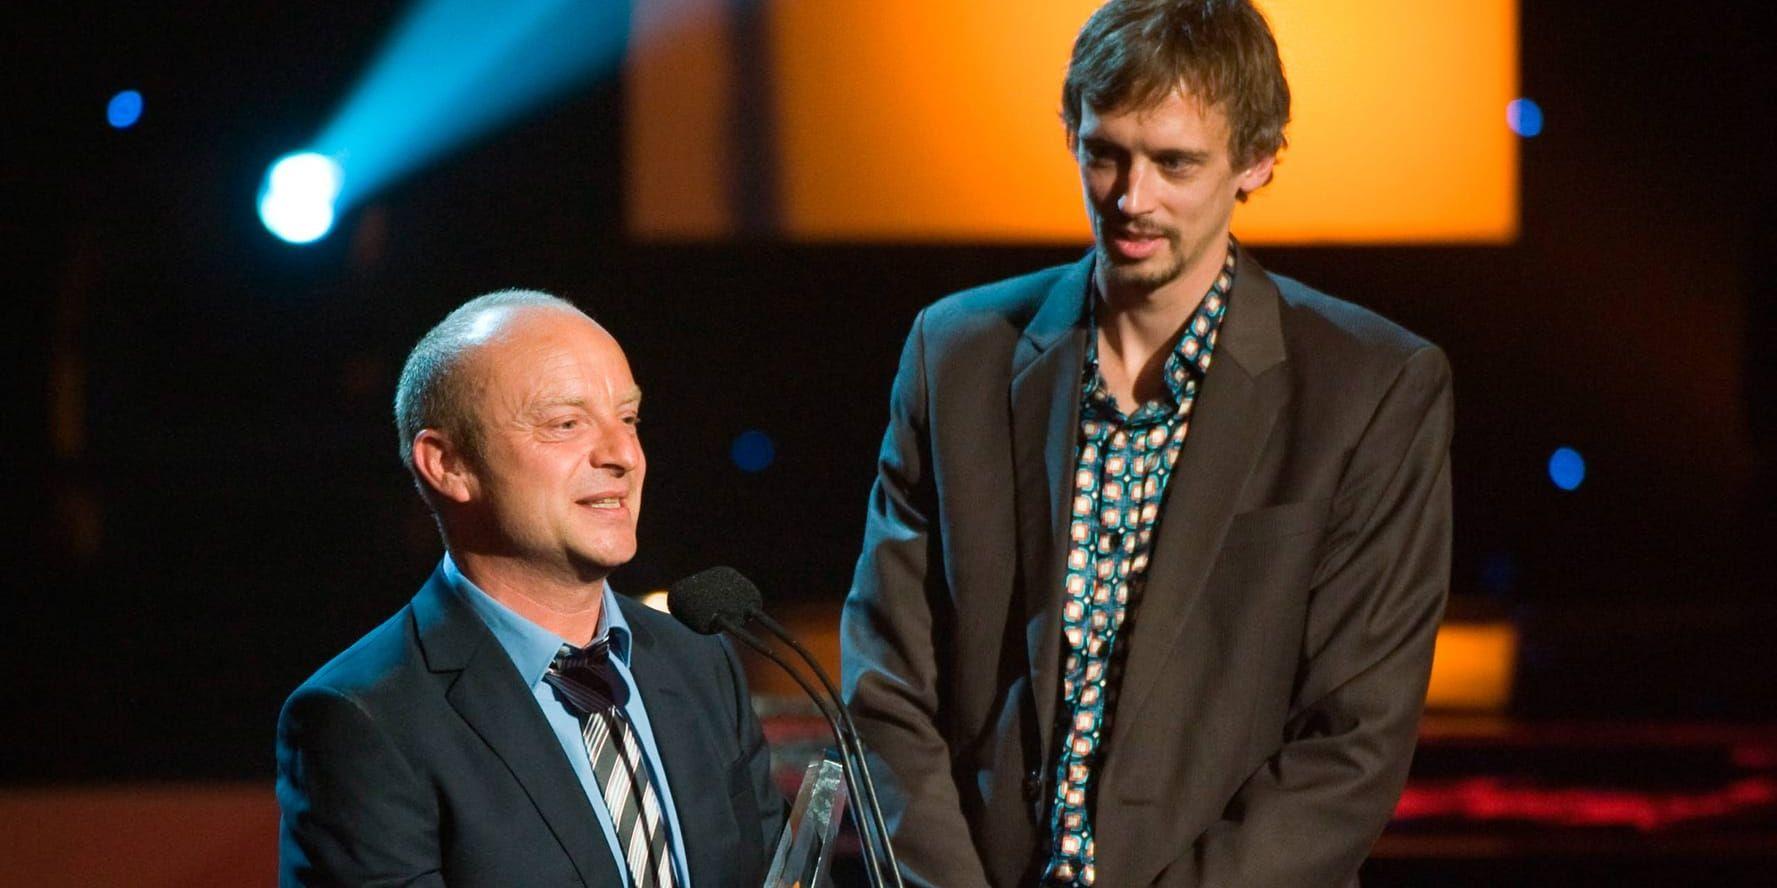 Manusförfattaren Jonas Gardell och regissören Simon Kaijser tog emot tv-priset Kristallen i kategorin årets dramaprogram för miniserien "De halvt dolda" 2009. Arkivbild.